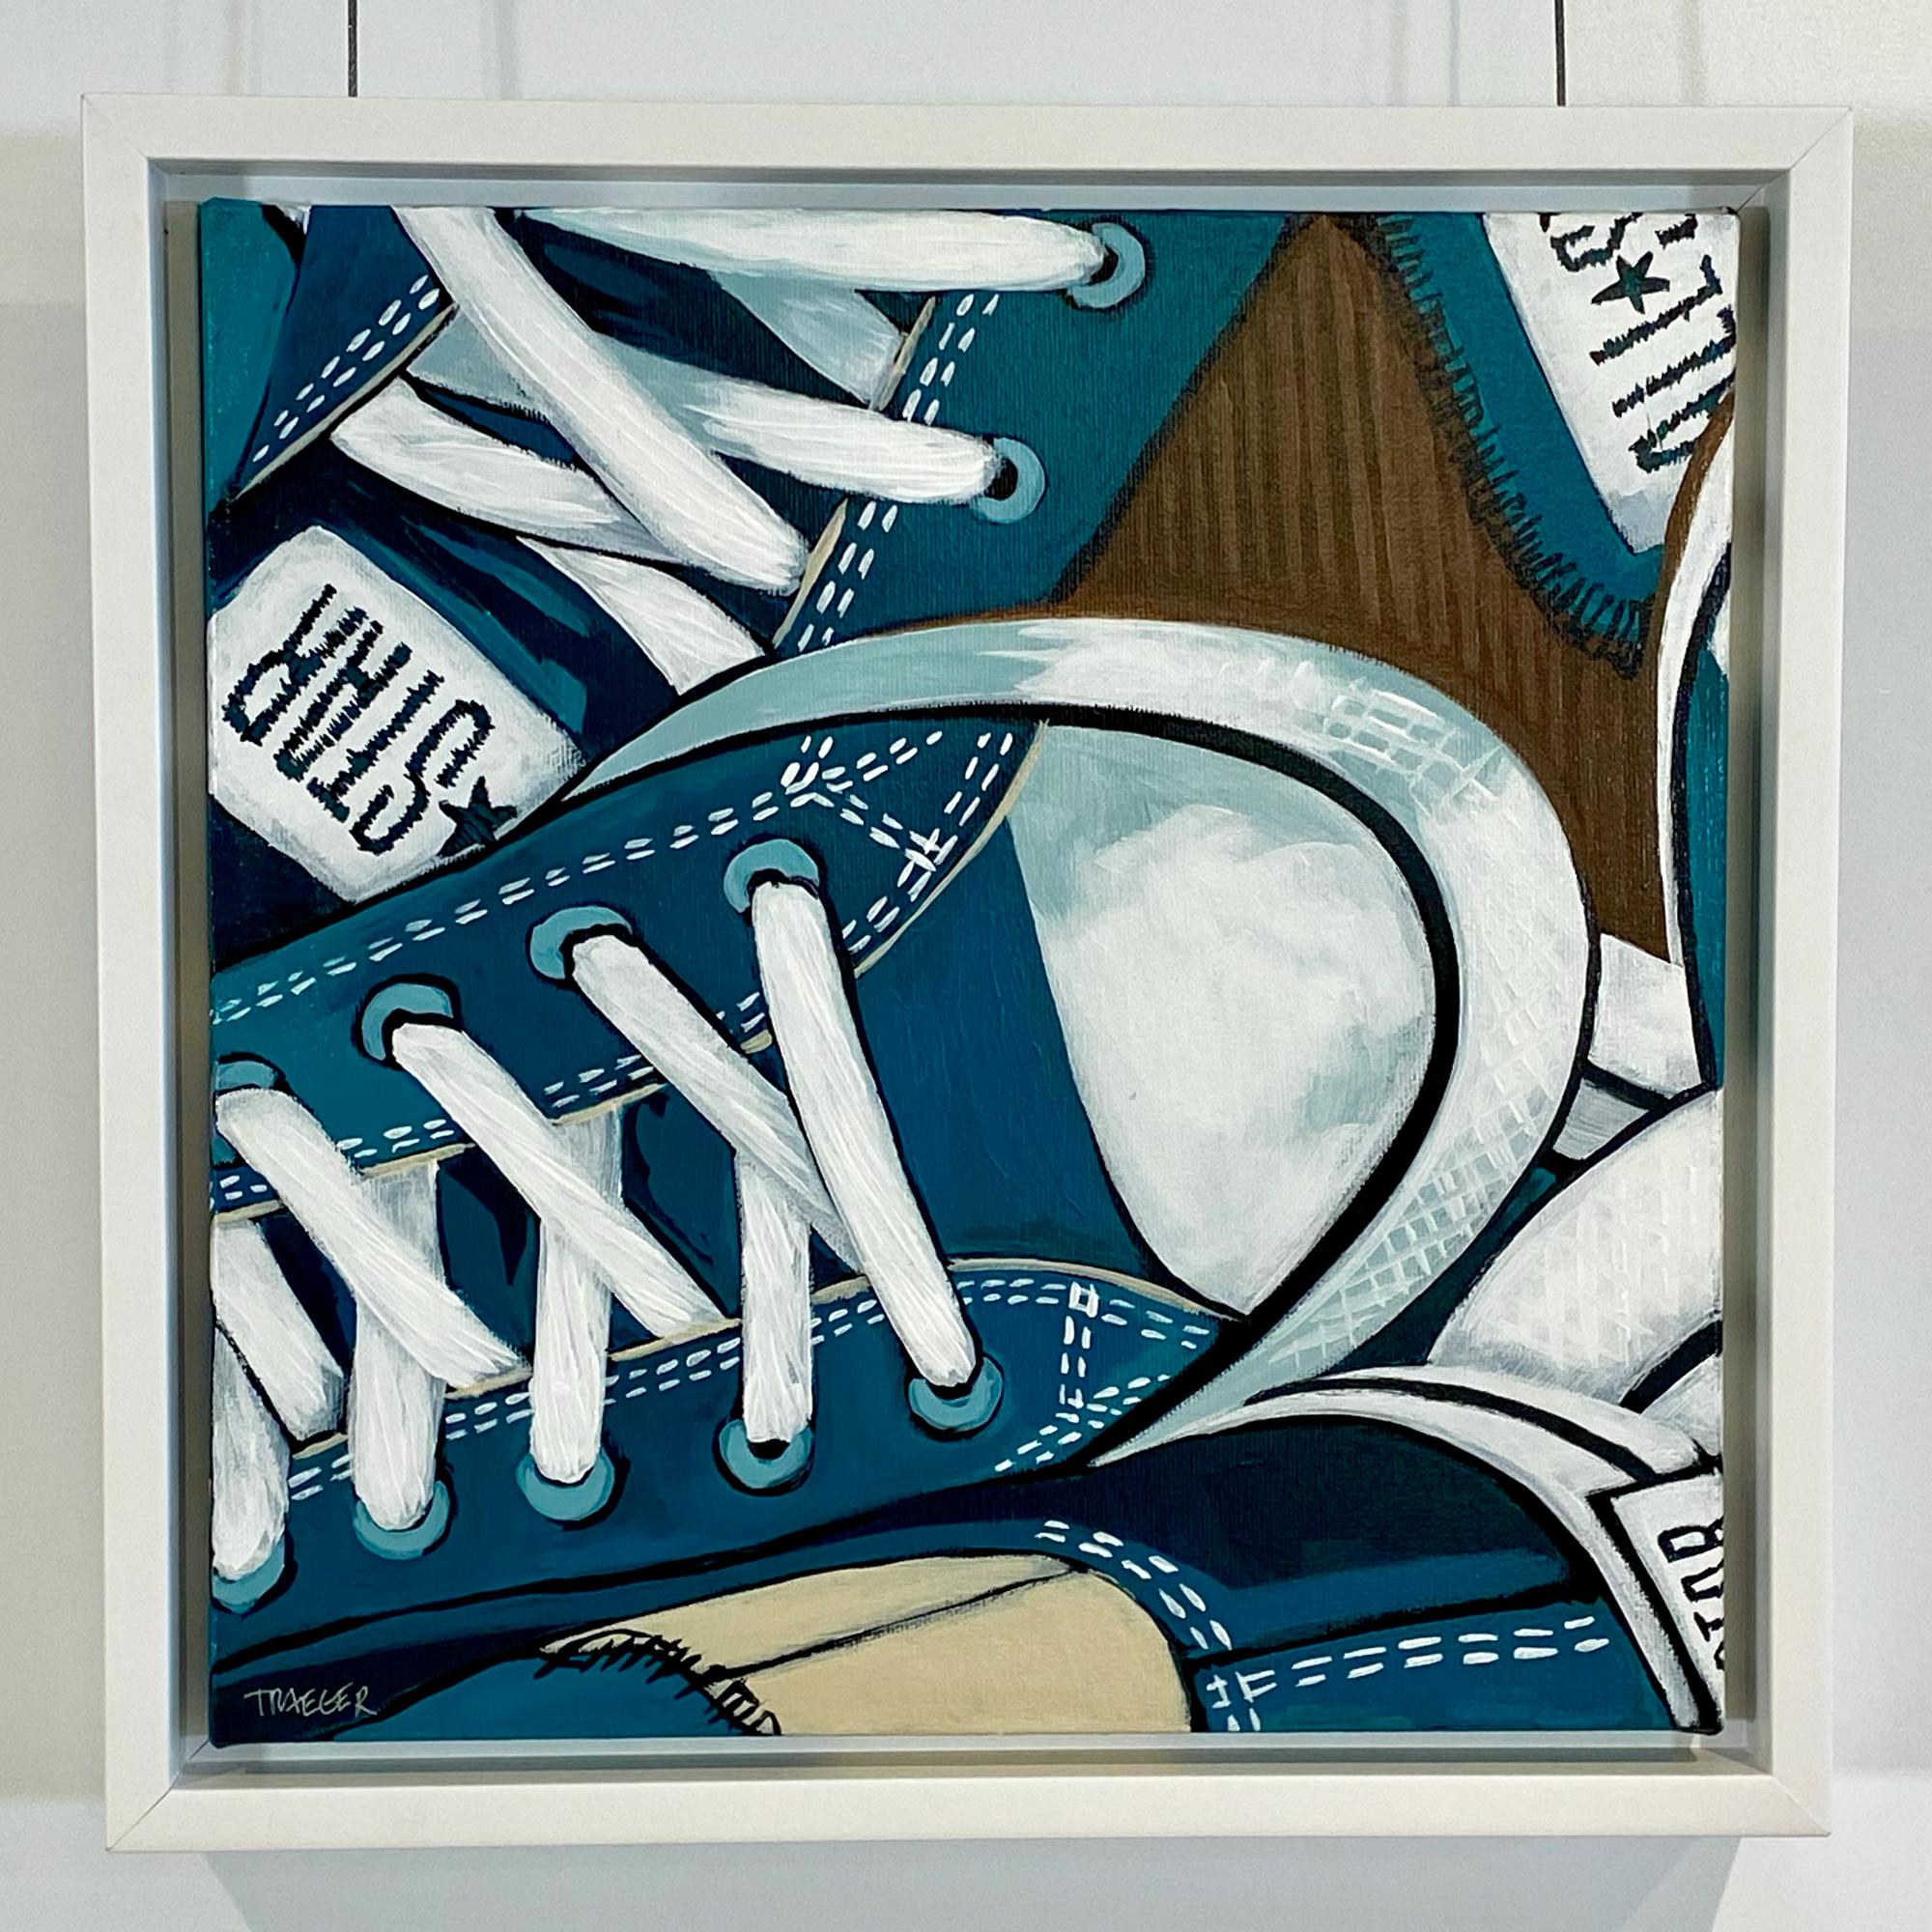 Figurative Painting Kathy Traeger - Three Quarter Done, chaussures conversées fantaisistes chuck bleues et blanches, acrylique sur toile